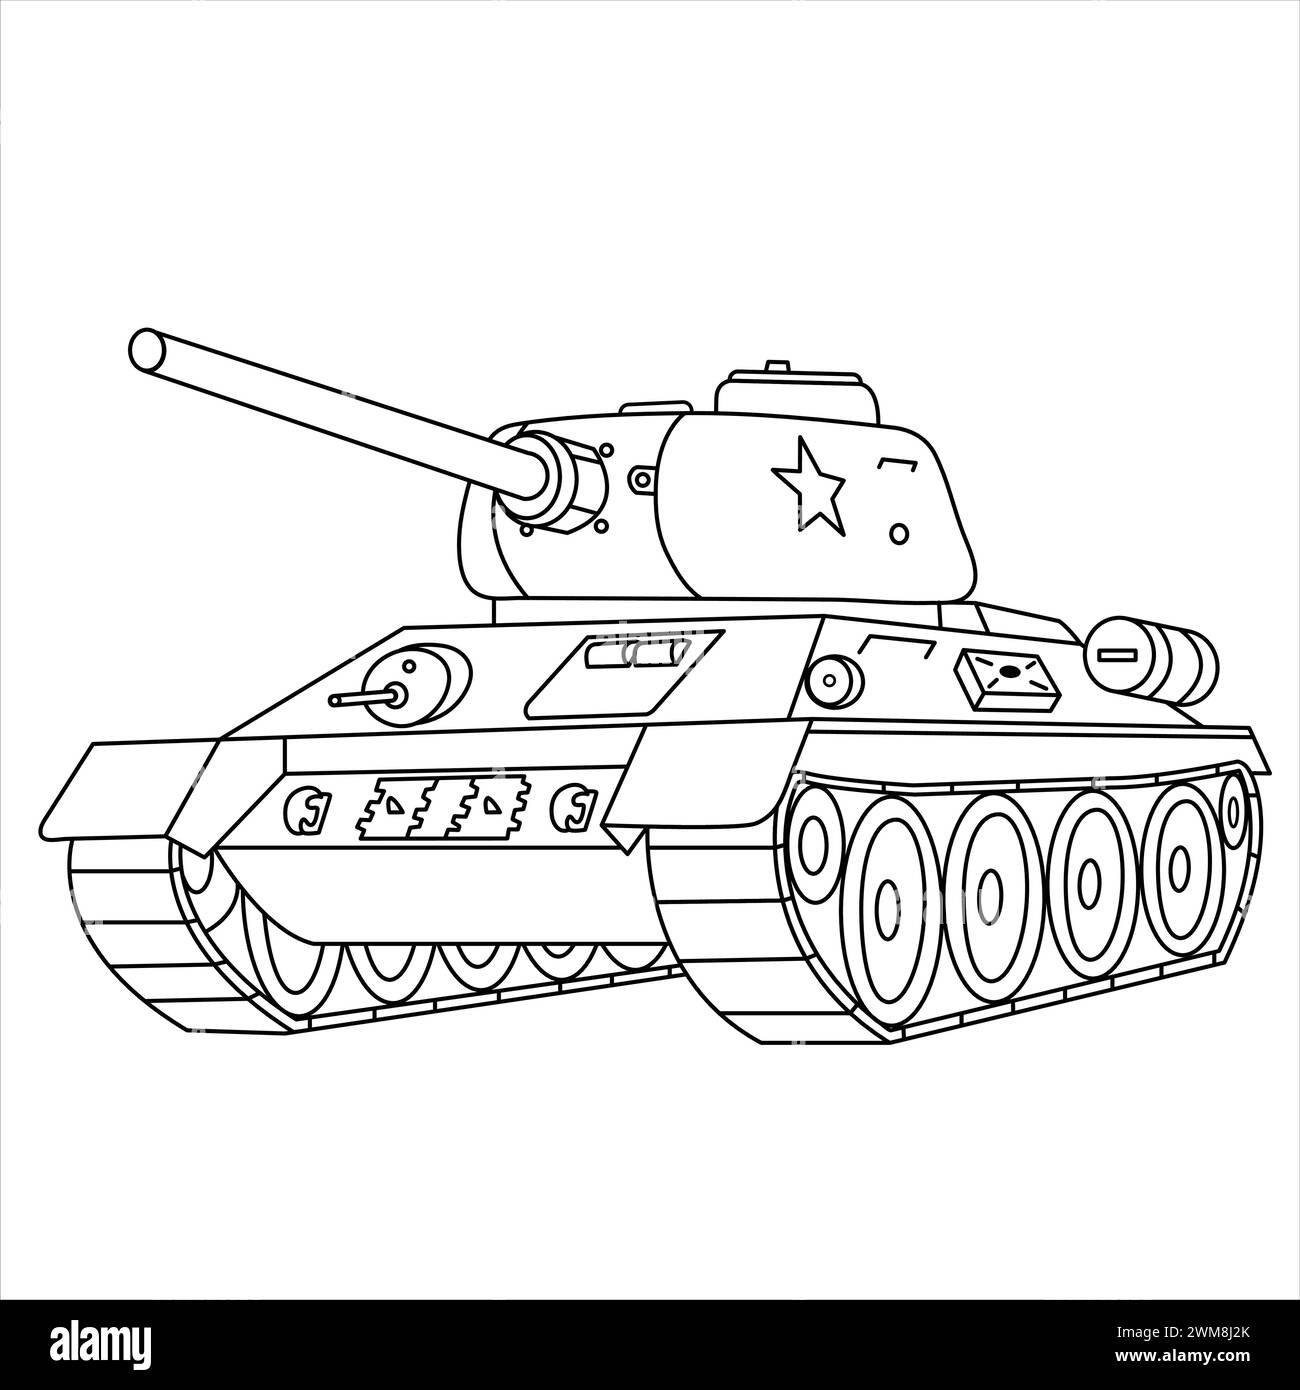 Sowjetischer Panzer T-34. Malbuch Für Militärfahrzeuge Für Kinder Und Erwachsene. Russischer Kampfpanzer aus dem Zweiten Weltkrieg isoliert auf weißem Hintergrund. Tankzeichnung Stock Vektor